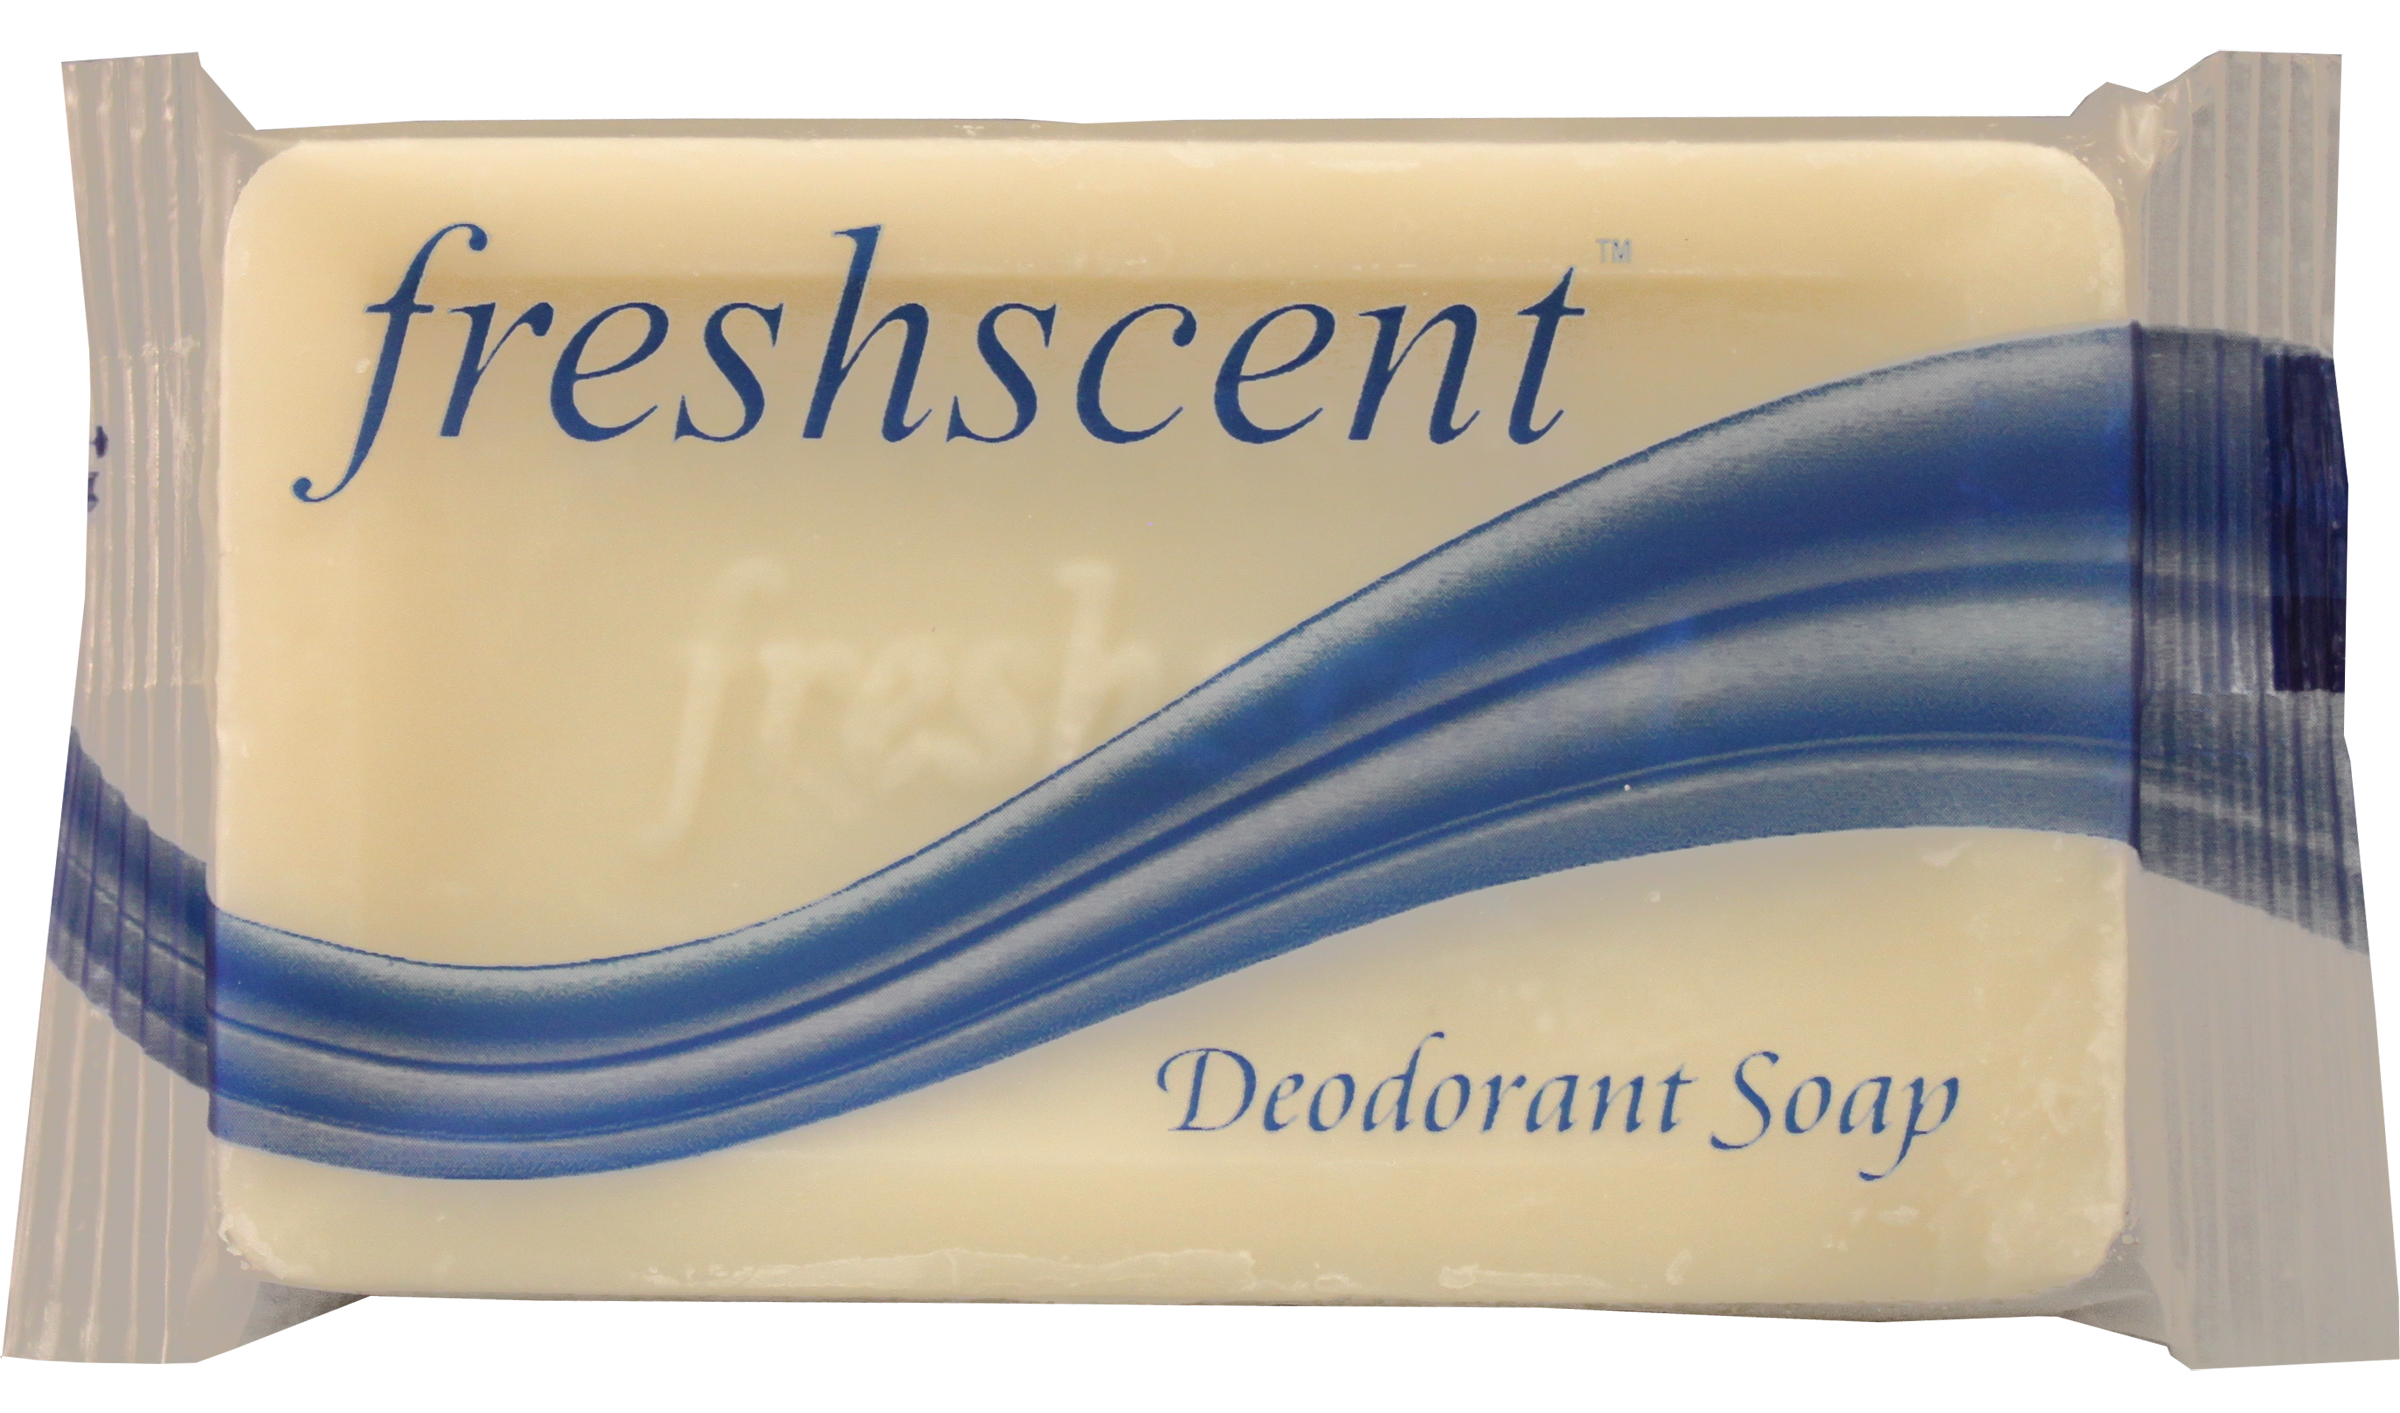 Freshscent #3/4 (.52 oz.) Deodorant Soap